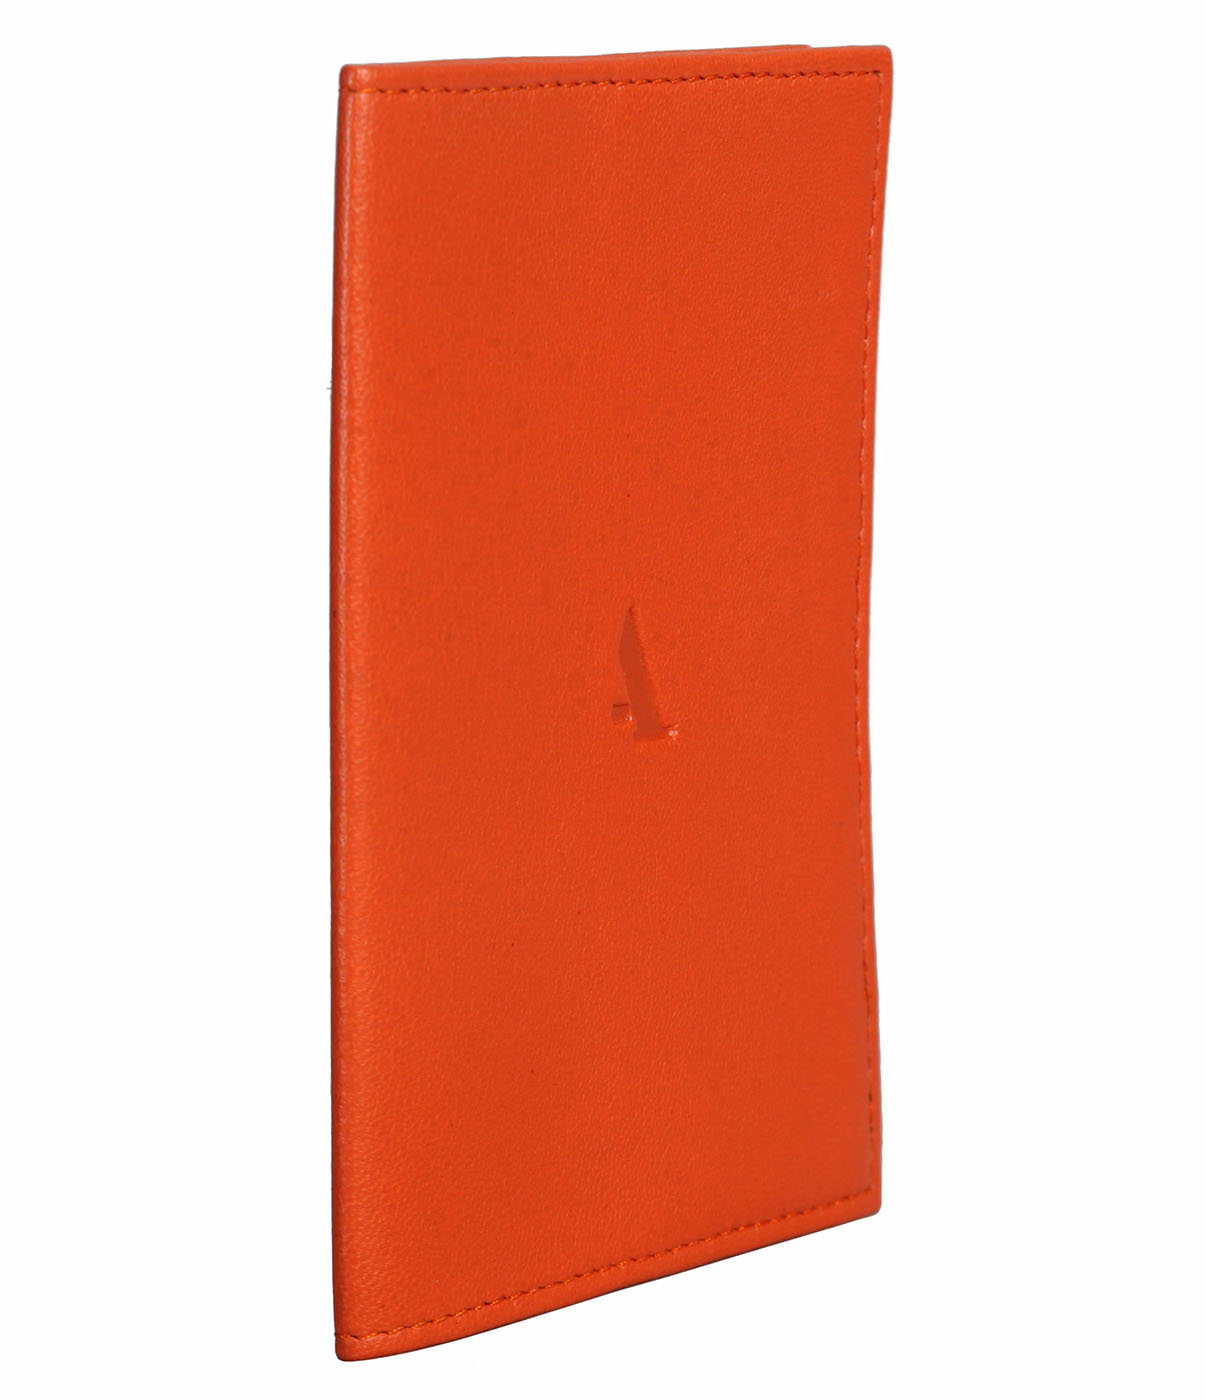 W73--Passport cover in Genuine Leather - Orange